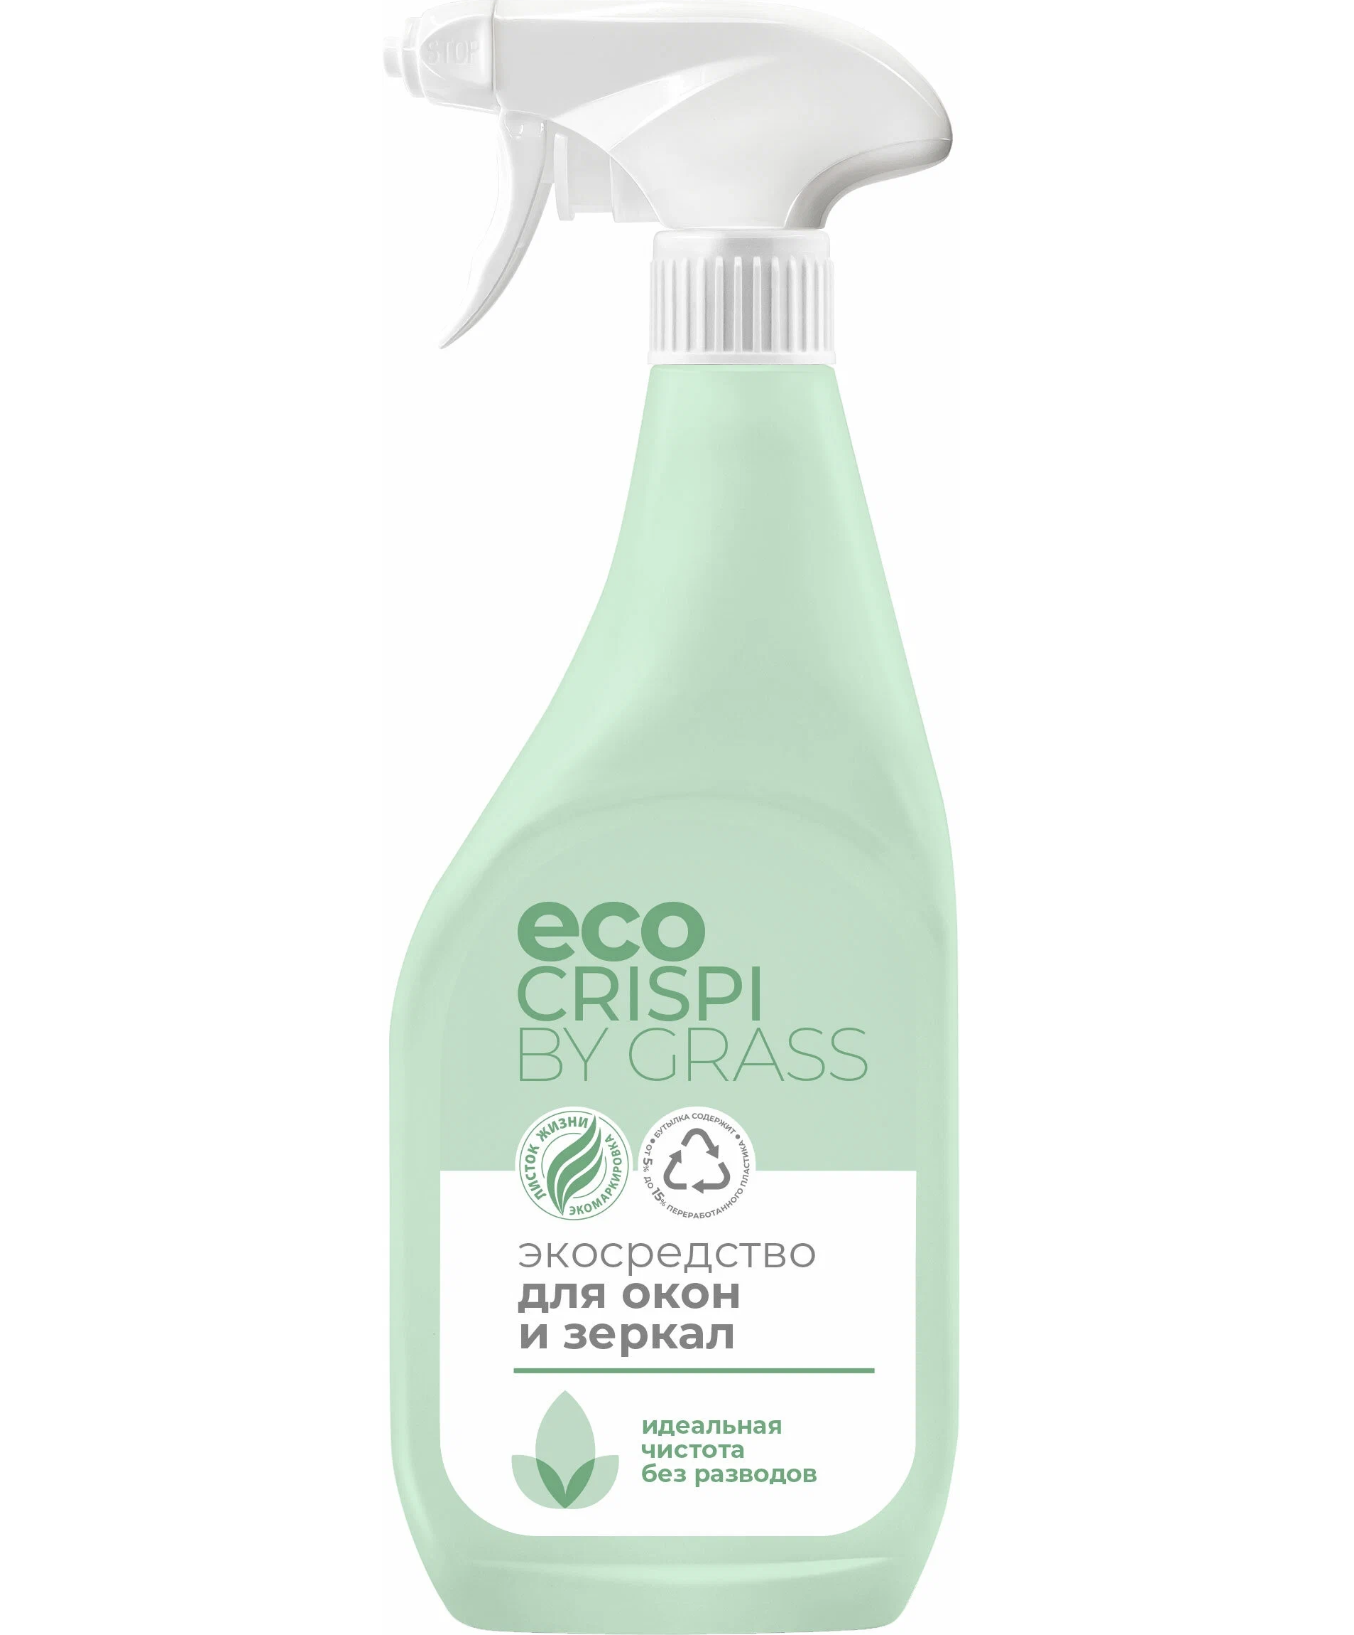 картинка Грасс / Grass Eco Crispi - Экосредство для окон и зеркал 600 мл